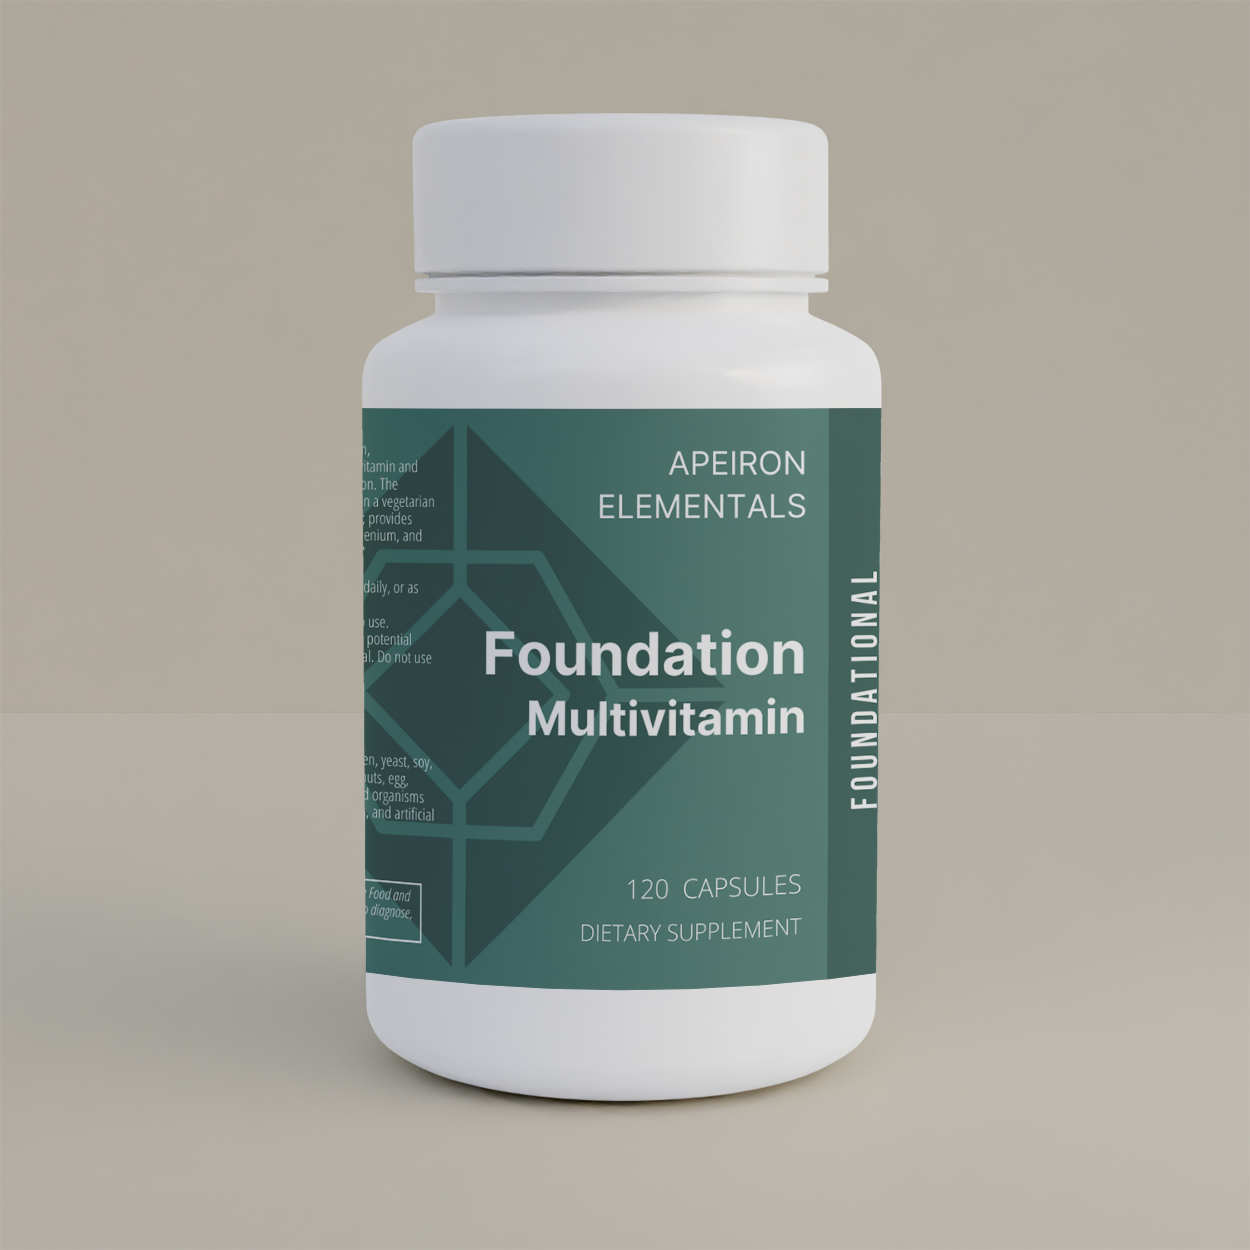 Foundation Multivitamin